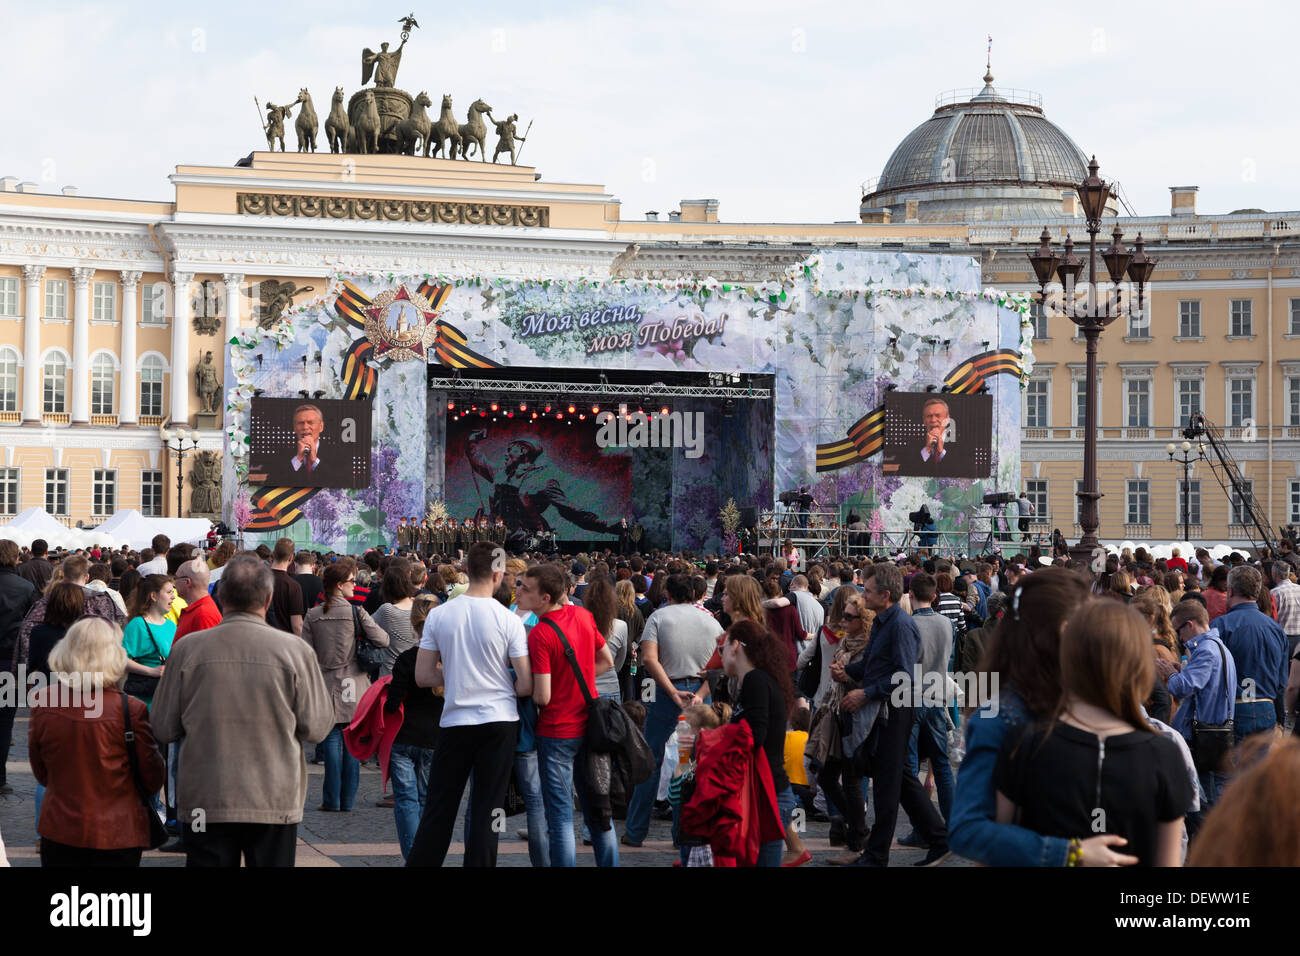 Maison de vacances concert sur la Place du Palais, Saint-Pétersbourg, Russie, le 9 mai 2013 Banque D'Images